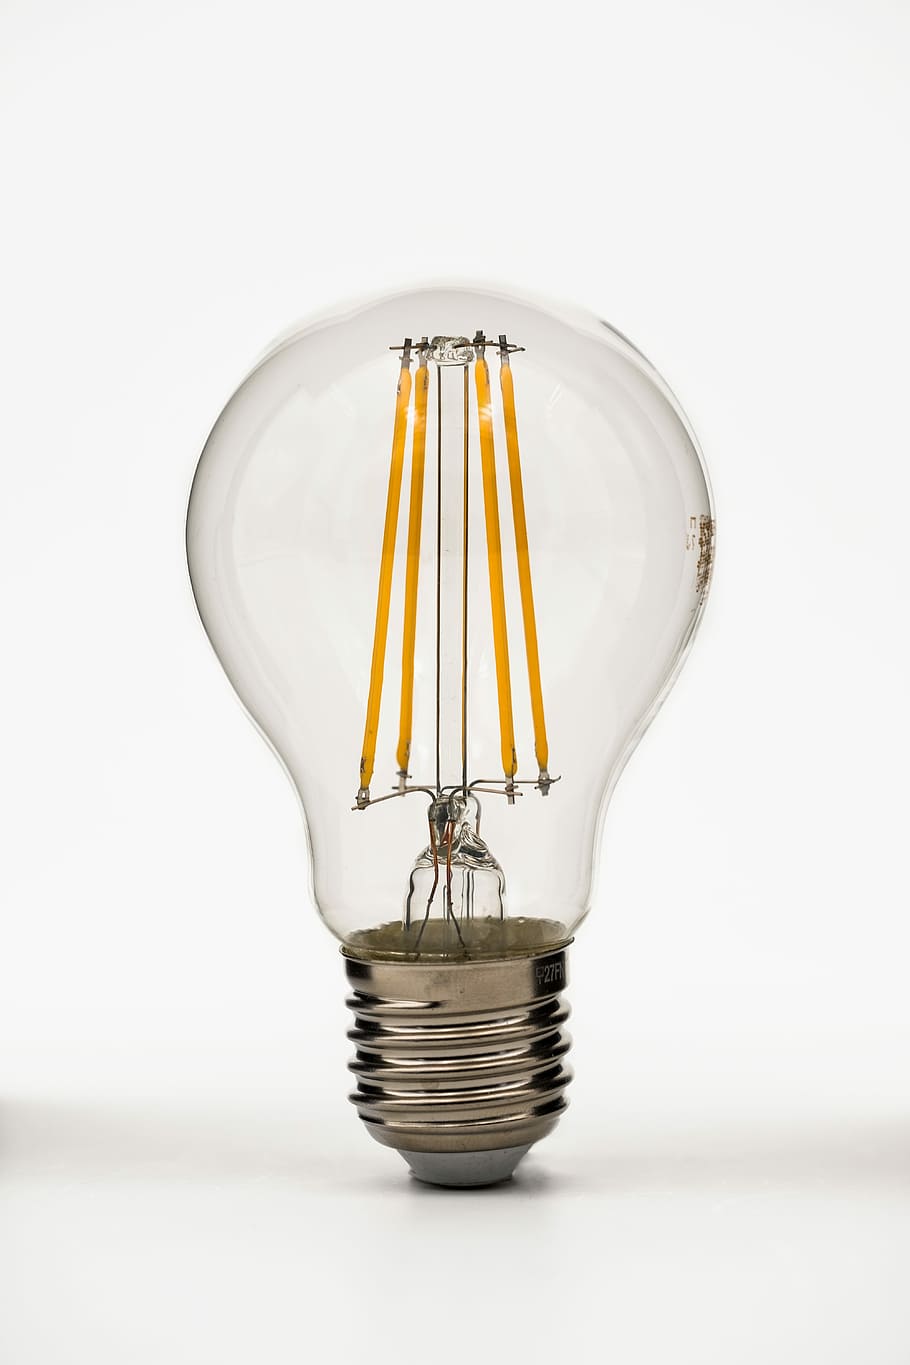 bola lampu, lampu, sparlampe, energiesparlampe, simpan, ekonomis, ramah lingkungan, dipimpin, cahaya, penerangan